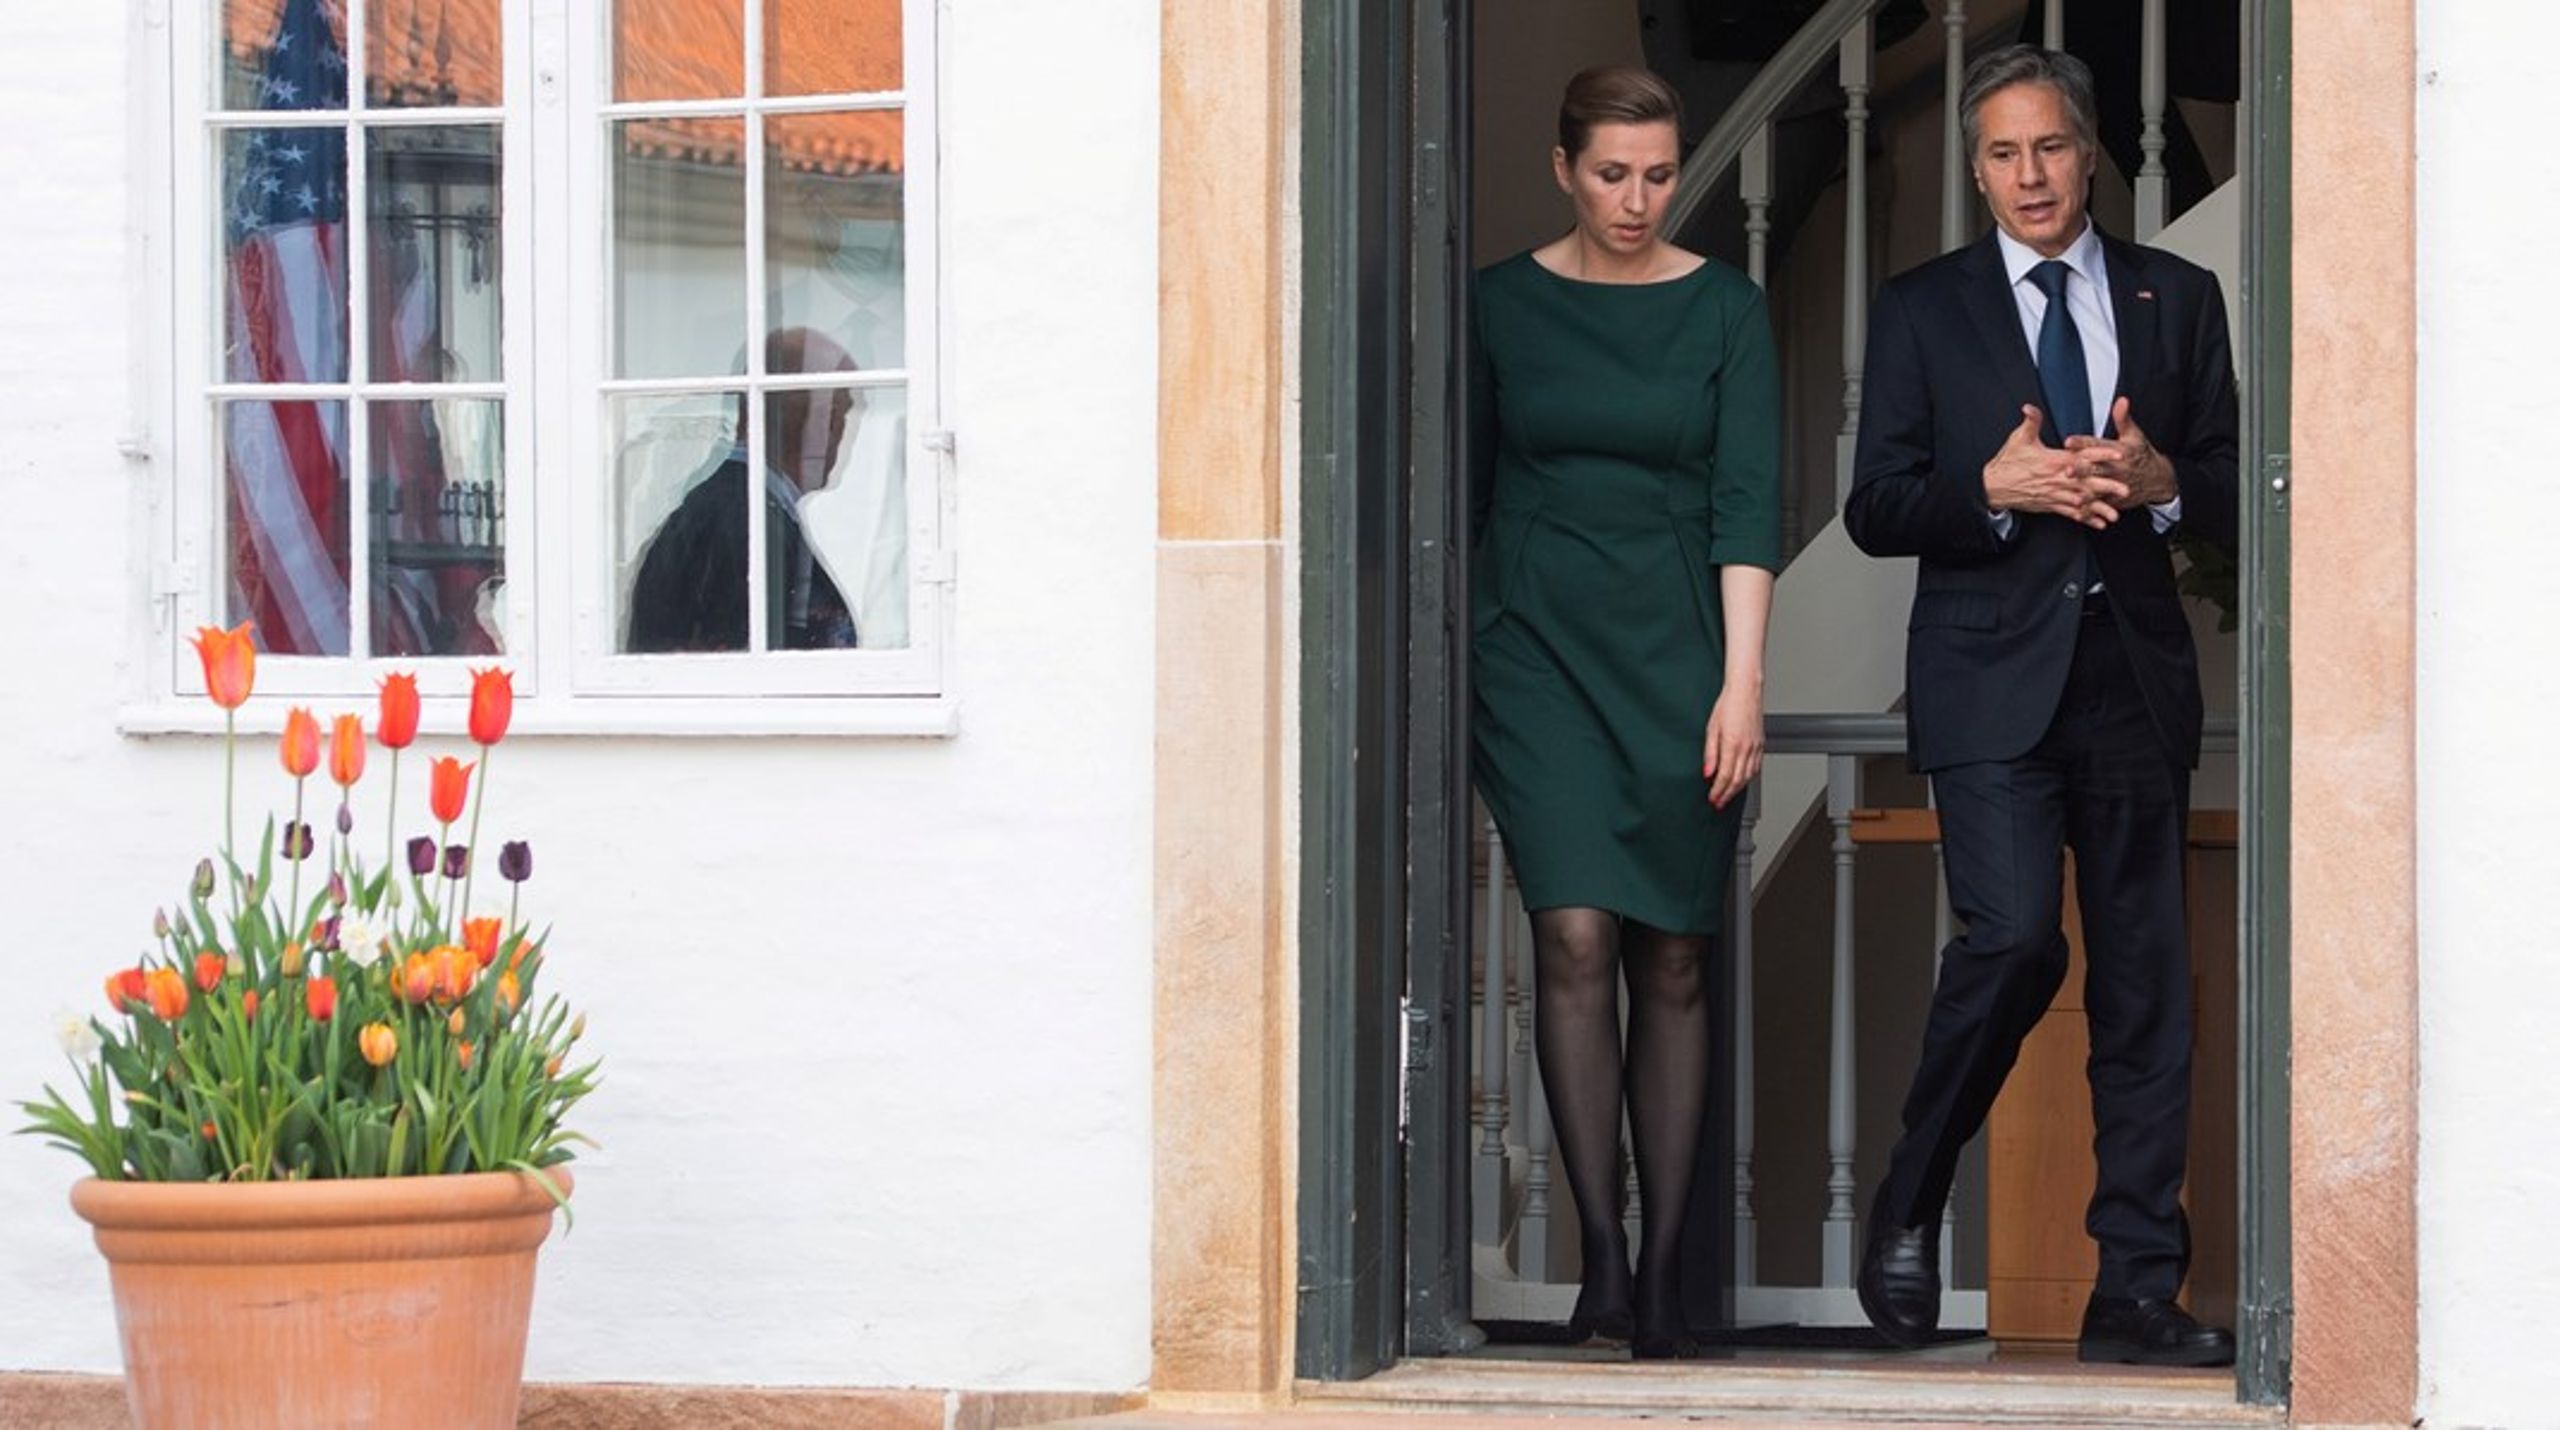 I maj besøgte den nye amerikanske udenrigsminister, Anthony Blinken, Danmark. På vejen hjem besøgte han også&nbsp;Grønland.&nbsp;